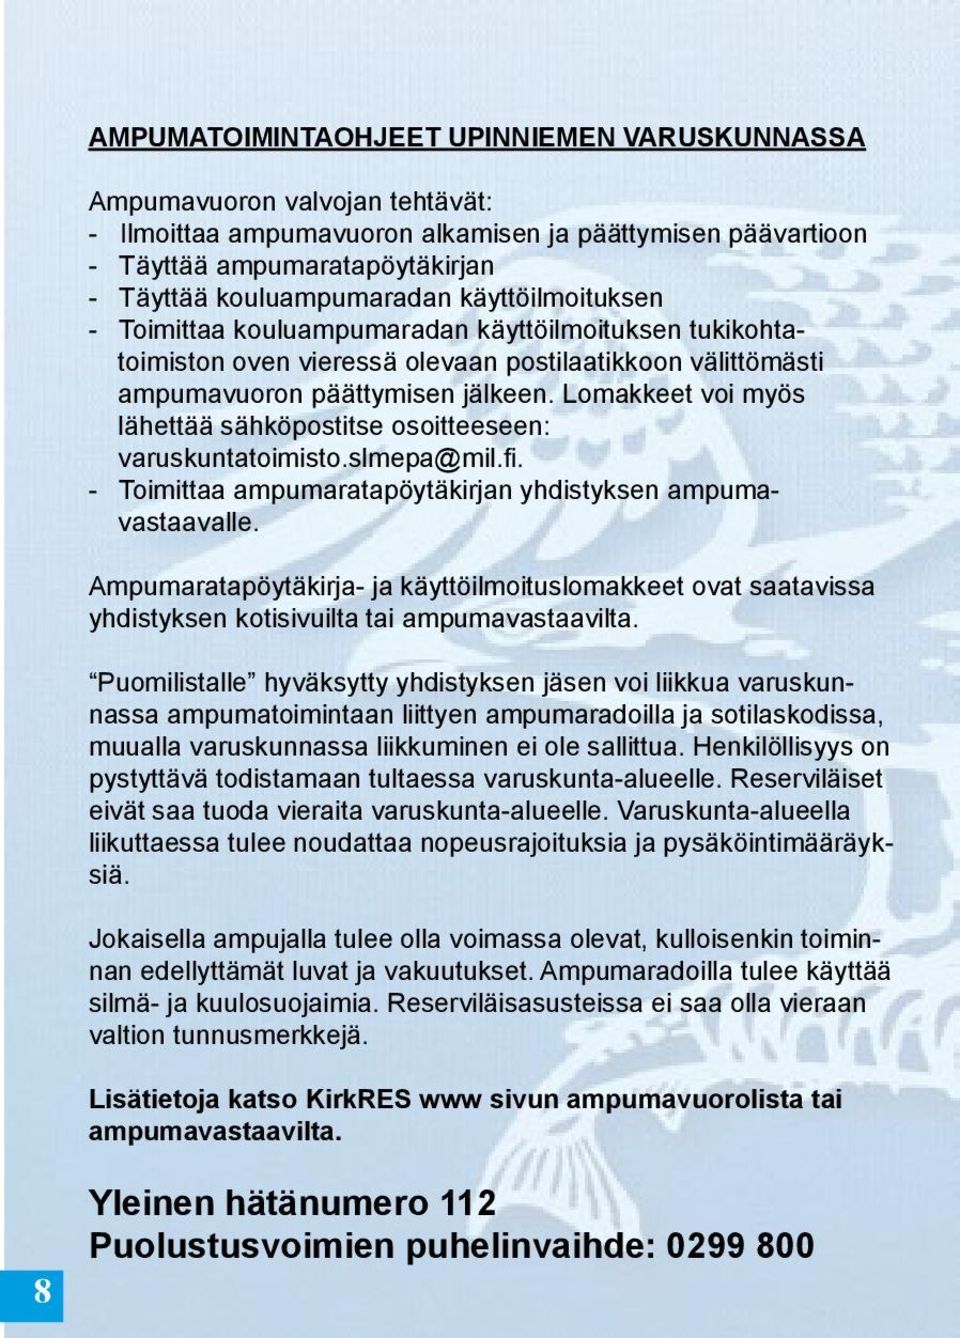 Lomakkeet voi myös lähettää sähköpostitse osoitteeseen: varuskuntatoimisto.slmepa@mil.fi. - Toimittaa ampumaratapöytäkirjan yhdistyksen ampumavastaavalle.